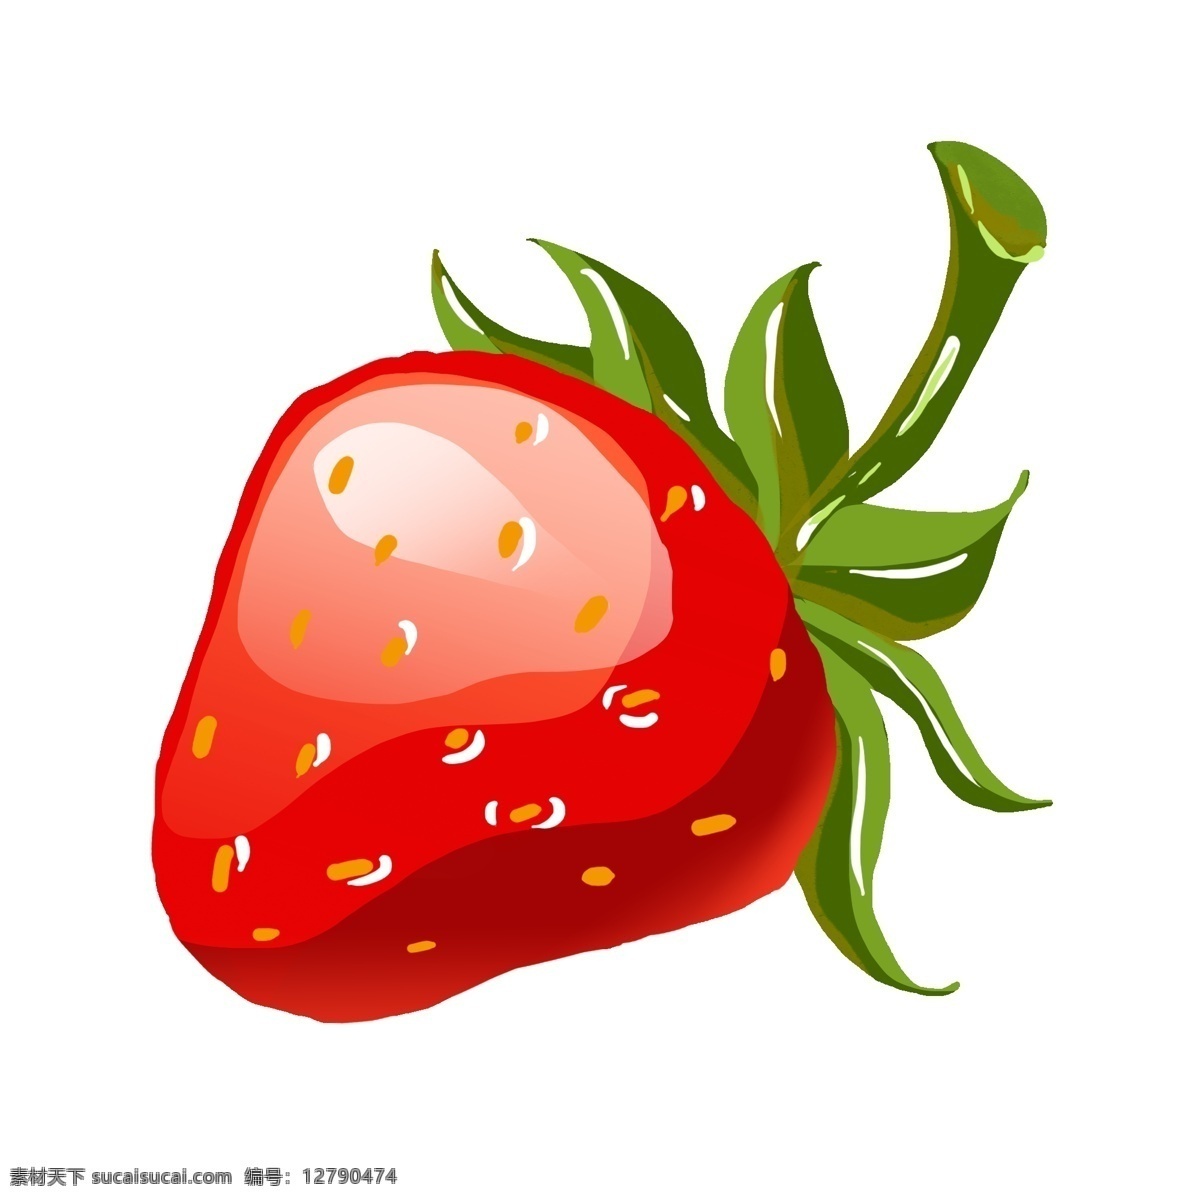 手绘 颗 草莓 插画 一颗草莓 成熟的草莓 红色 绿色 叶子 果实 草莓籽